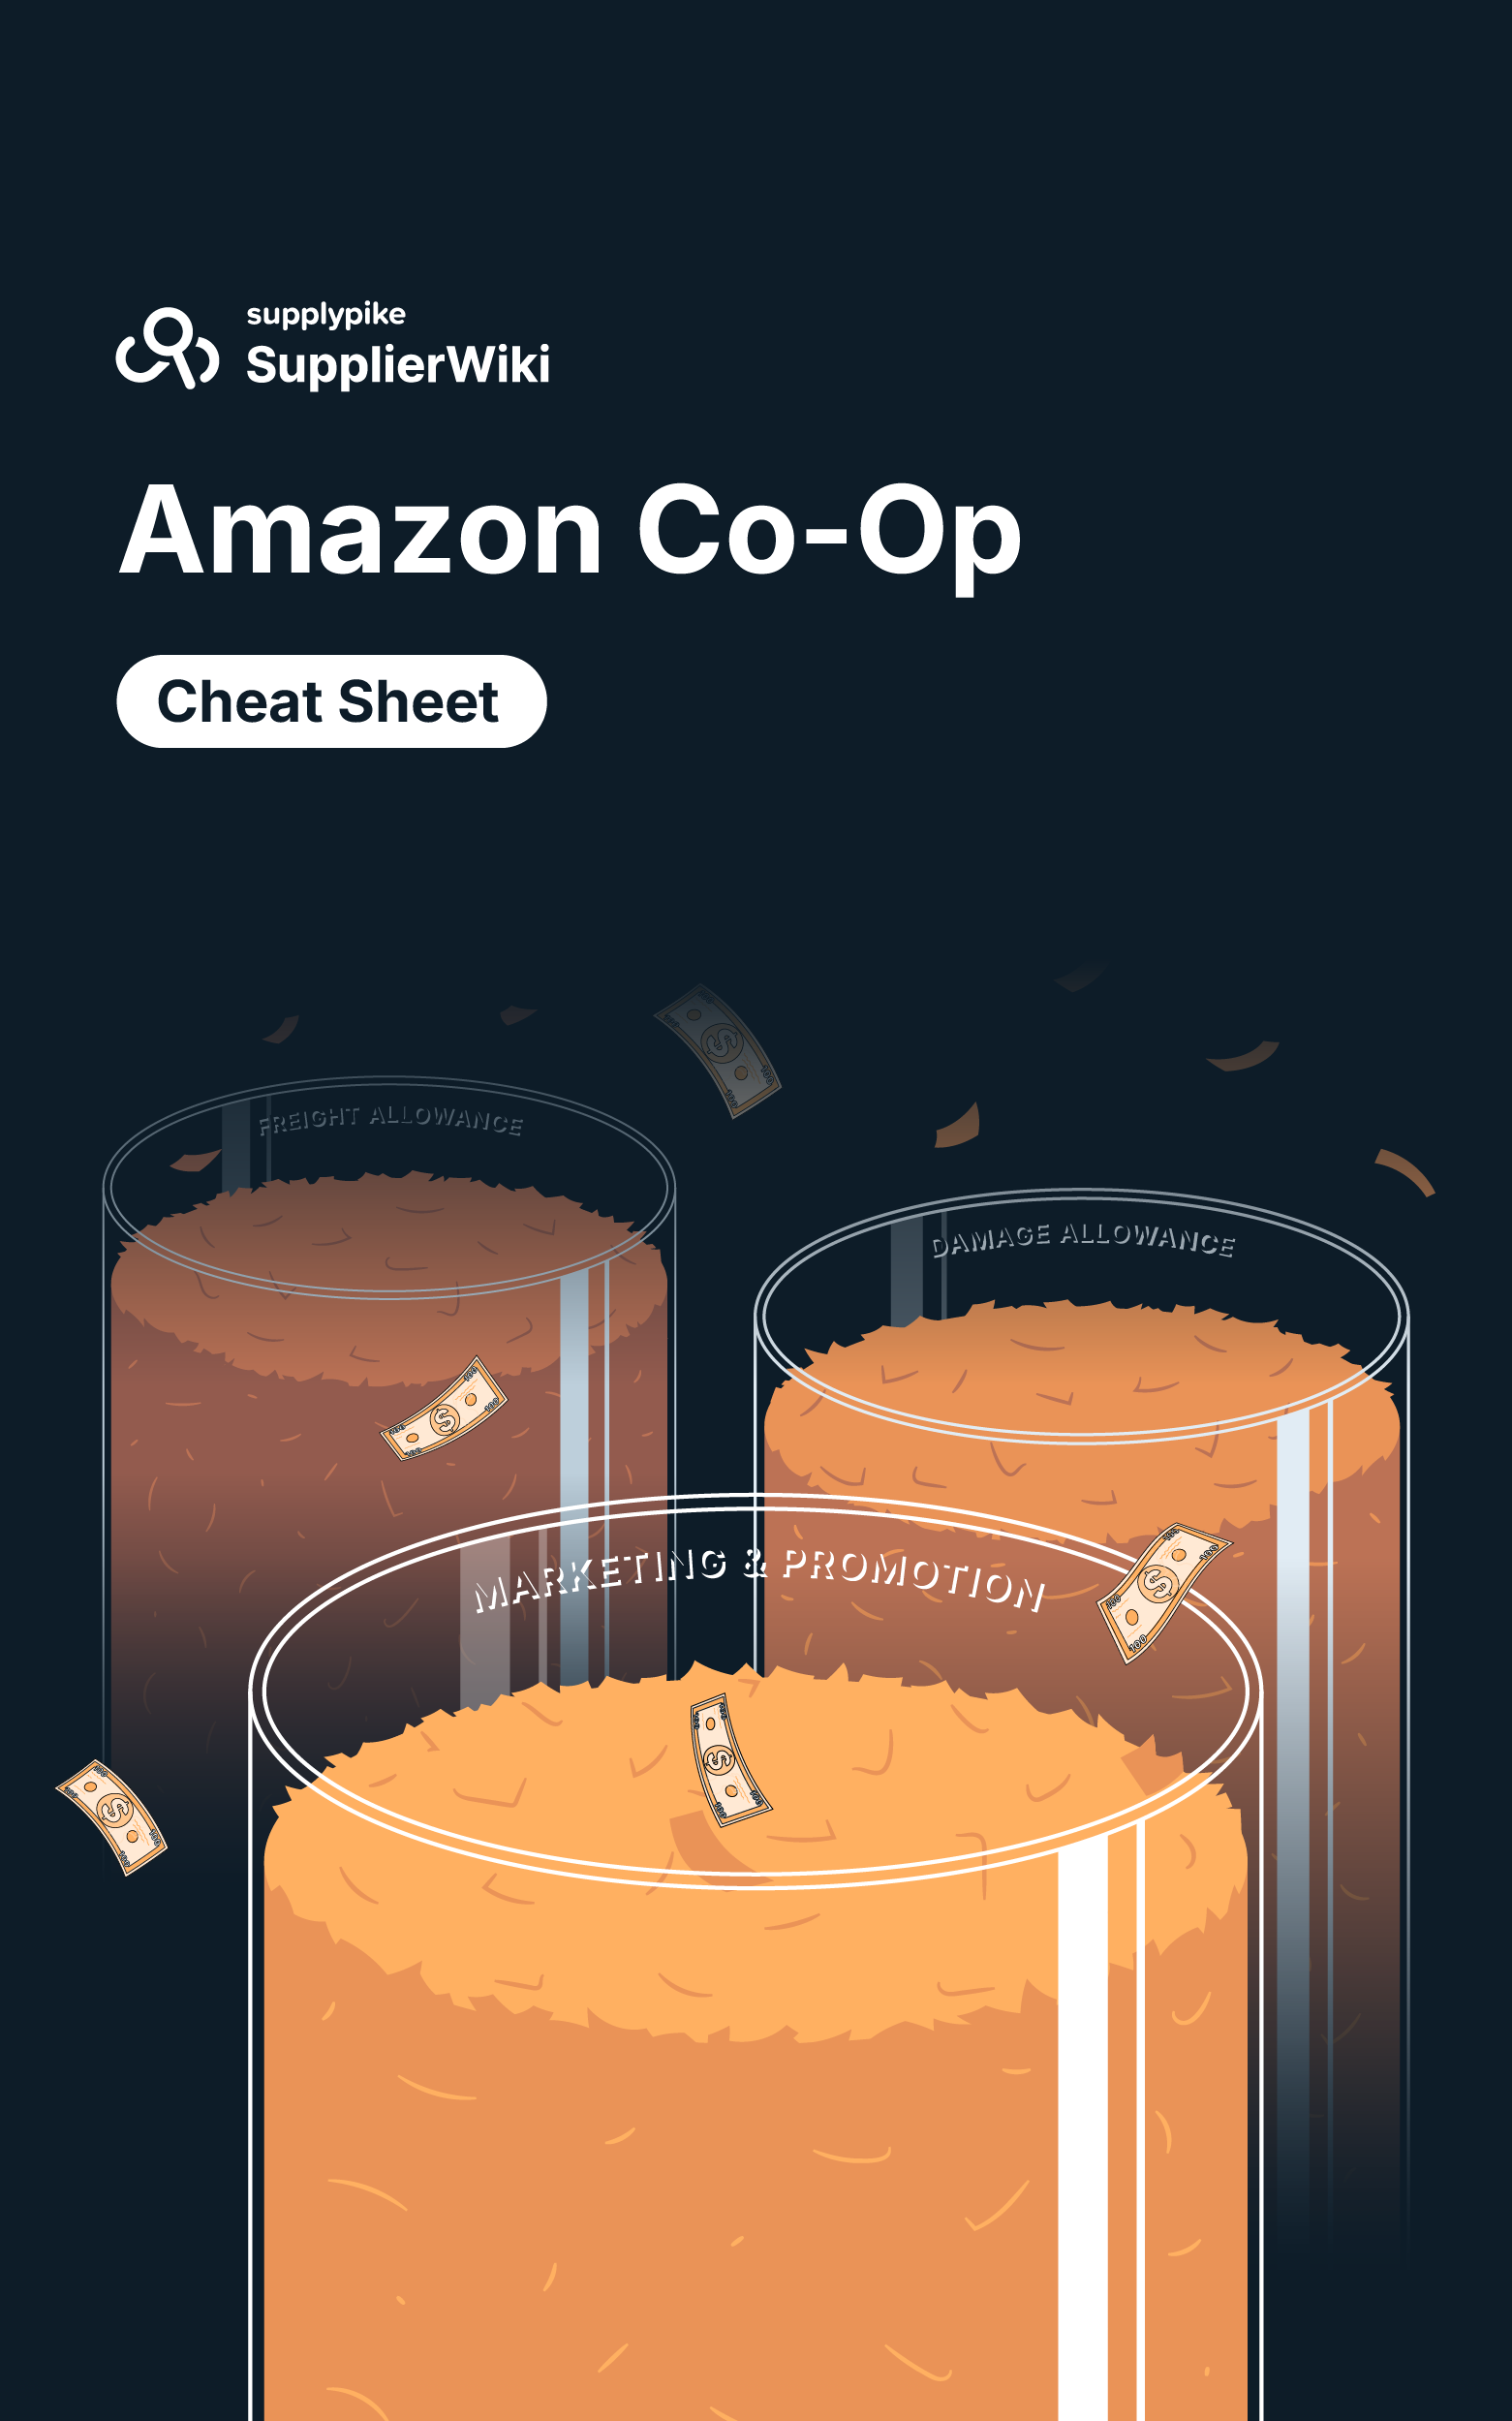 Amazon Co-Op Cheat Sheet